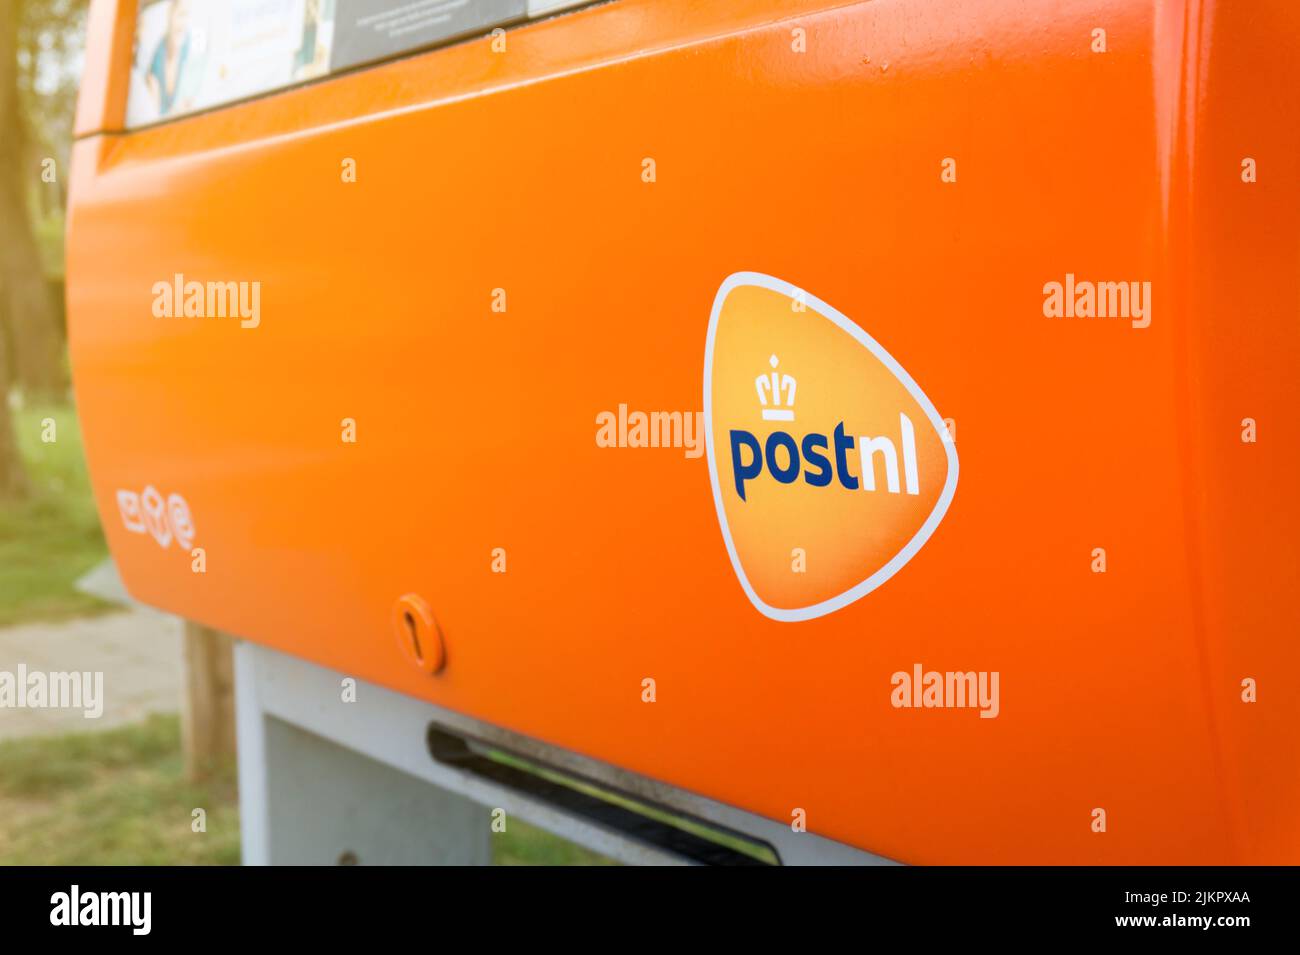 Casella postale PostNL arancione con logo in primo piano. Casella postale della società di servizi postali olandese. Hertogenbosch, Paesi Bassi - 7 maggio 2022. Foto Stock